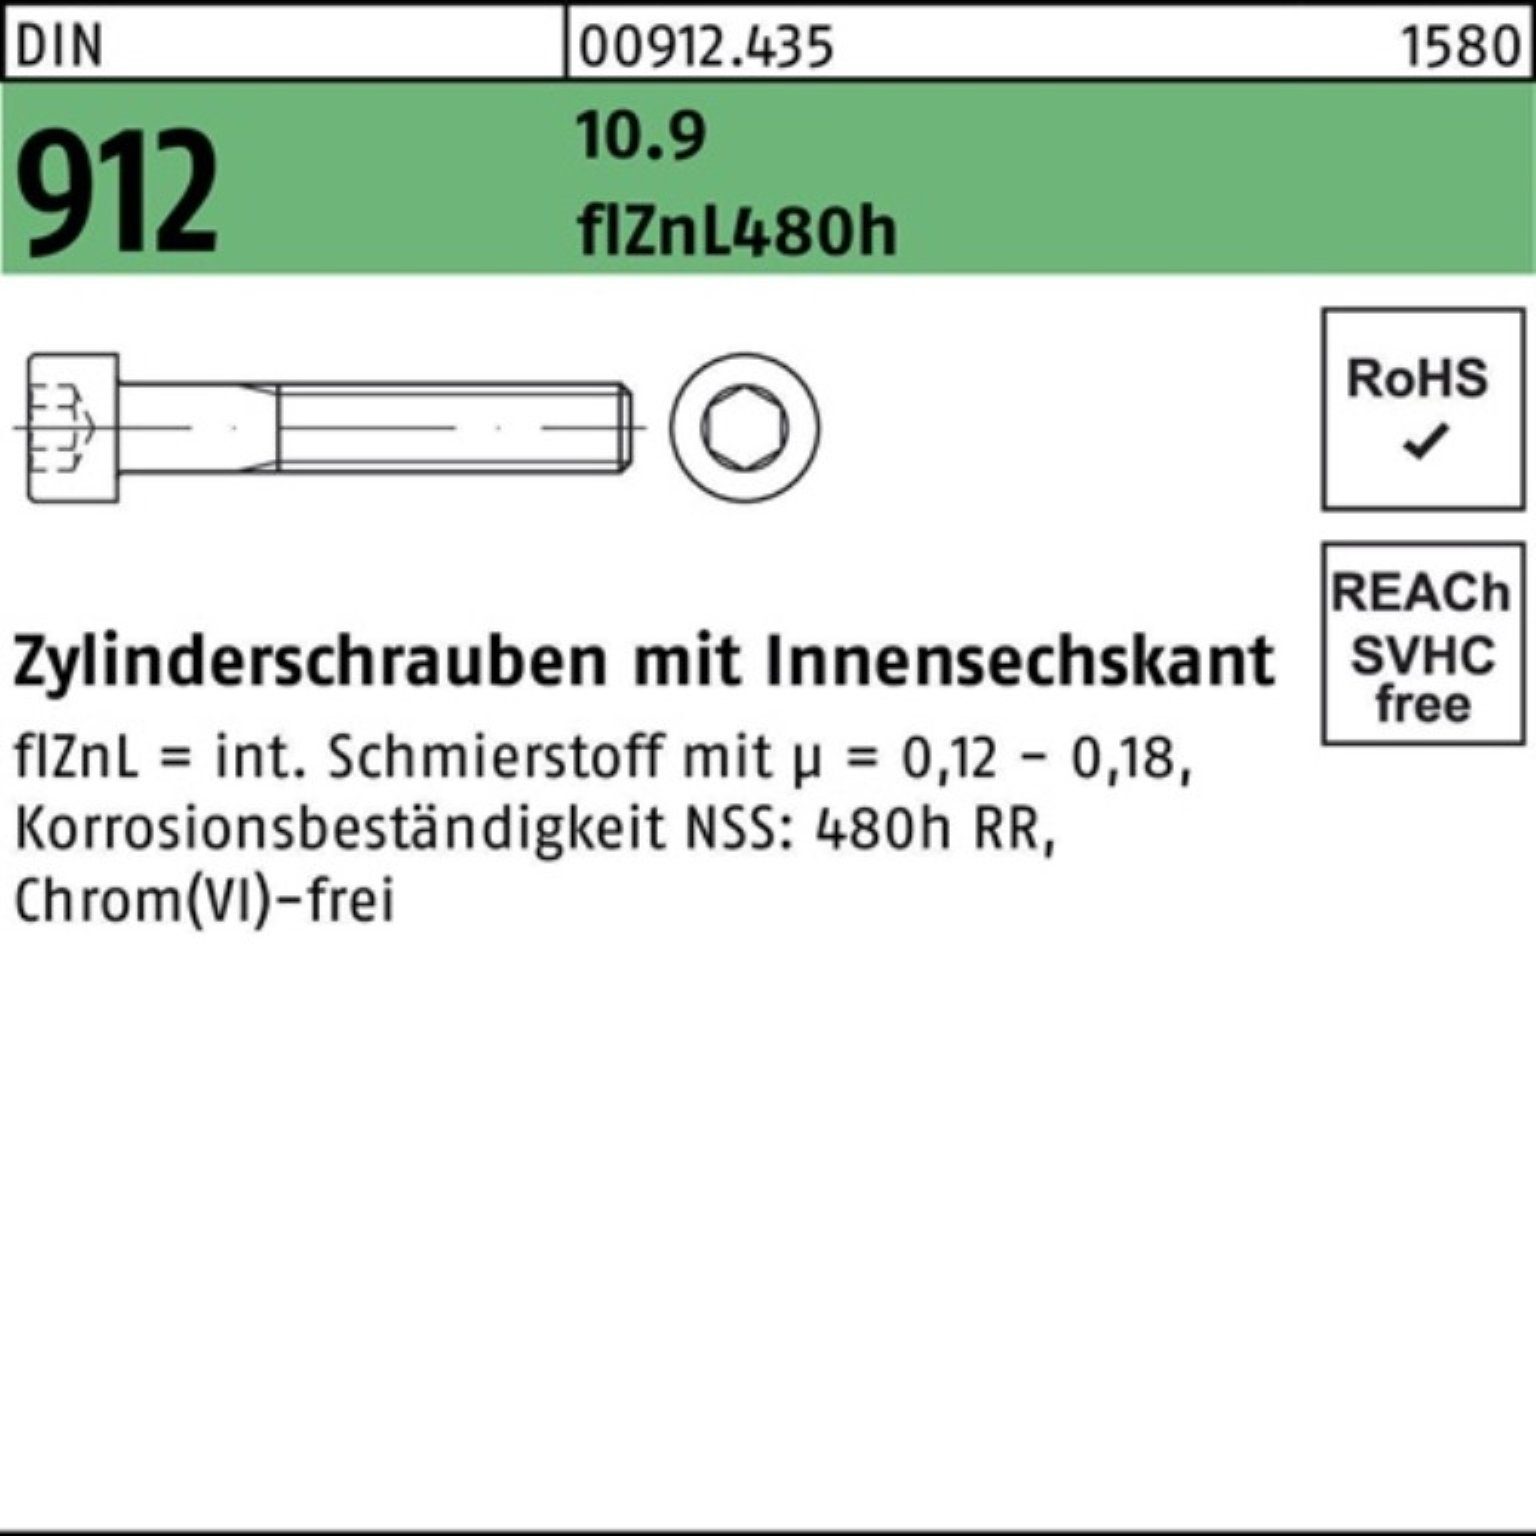 10.9 Innen-6kt 200er Zylinderschraube 912 Pack Zylinderschraube M6x65 Reyher DIN flZnL/nc/x/x